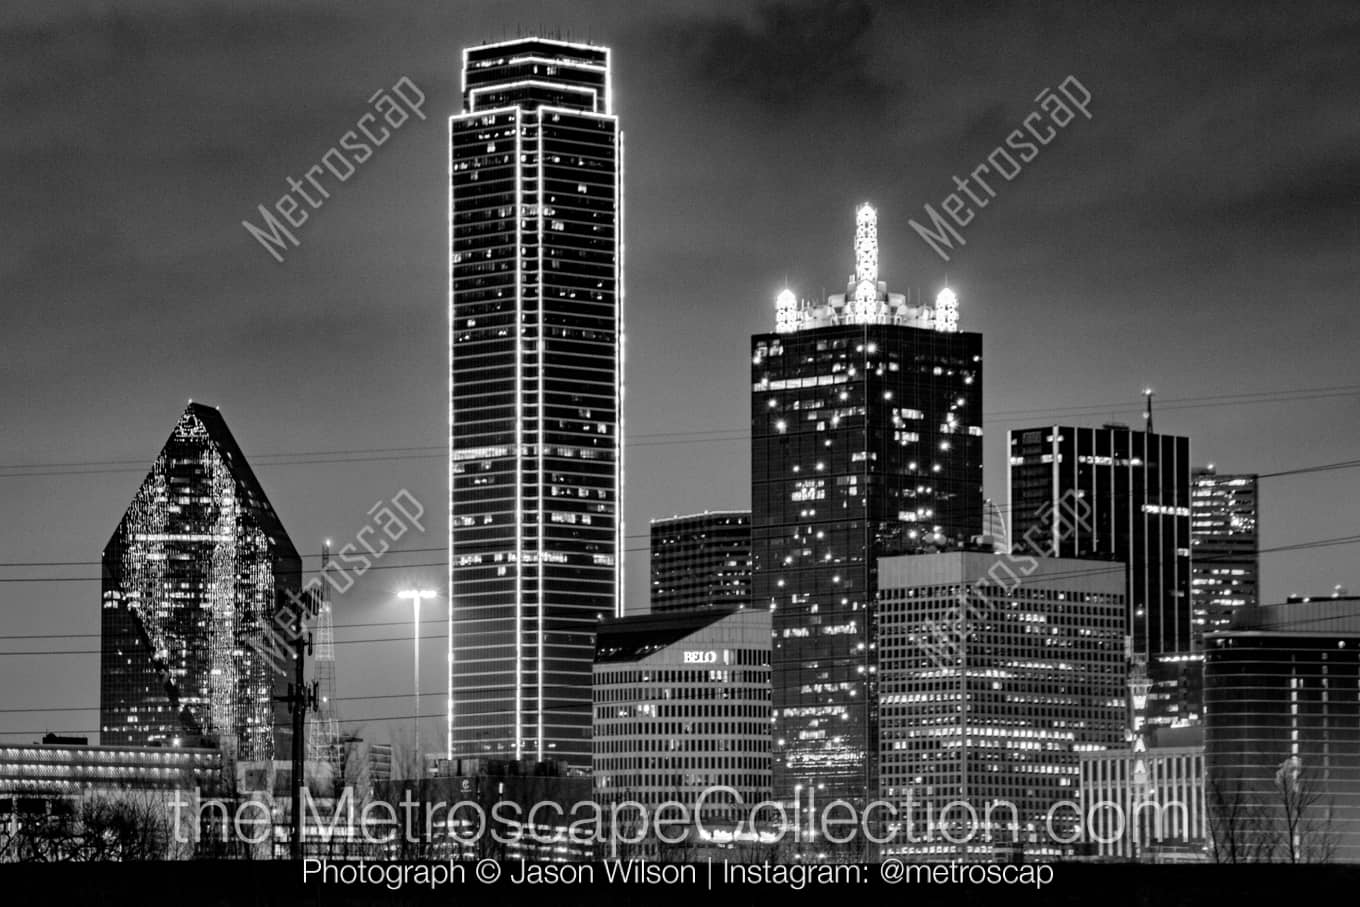 Dallas Texas Picture at Night